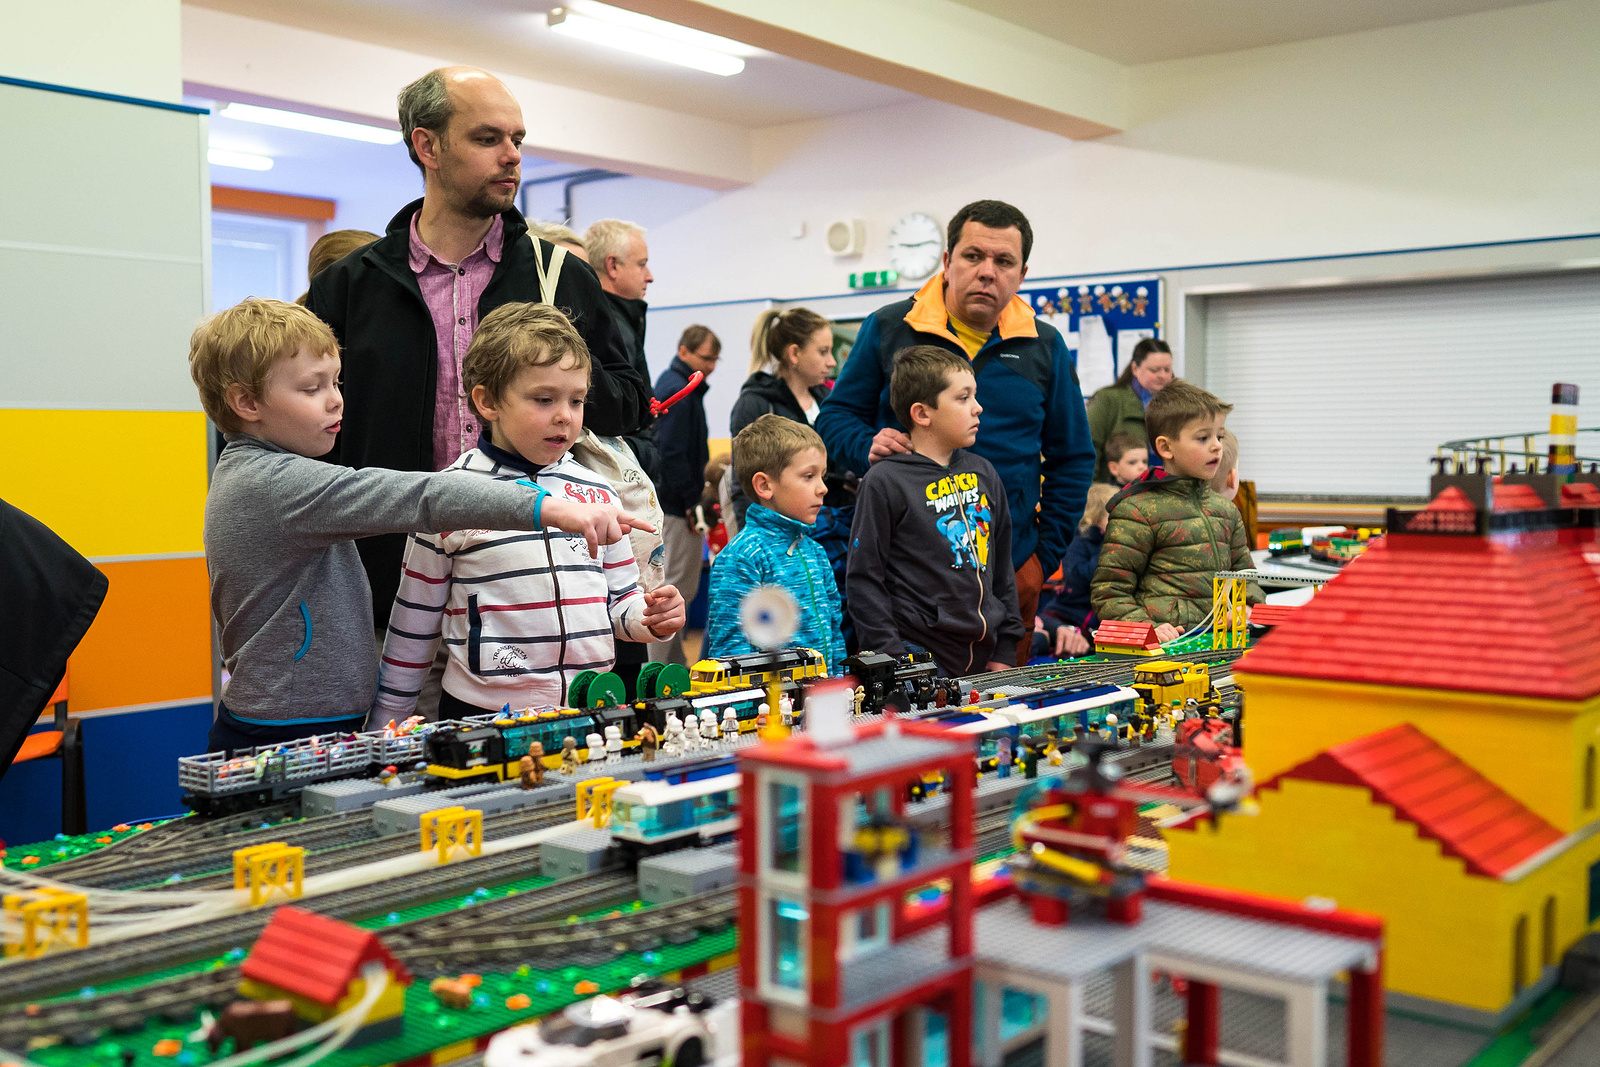 OBRAZEM: Legománie v Ostravě. Poruba hostila největší výstavu v regionu -  Moravskoslezský deník